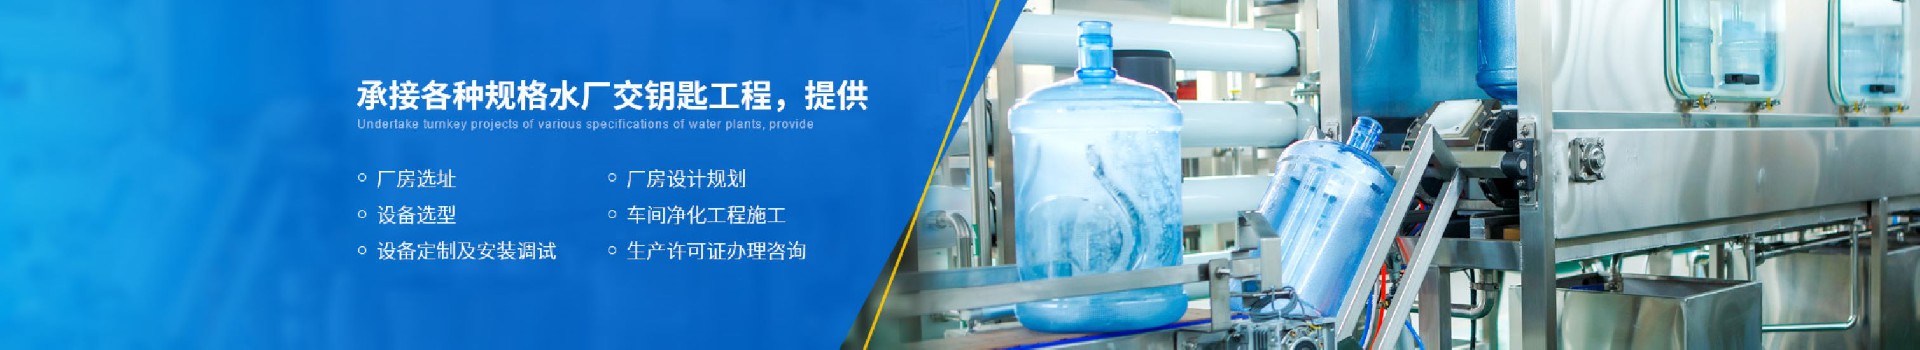 公司简介-武汉纯水设备厂家 (PC+WAP)-纯净水设备生产销售